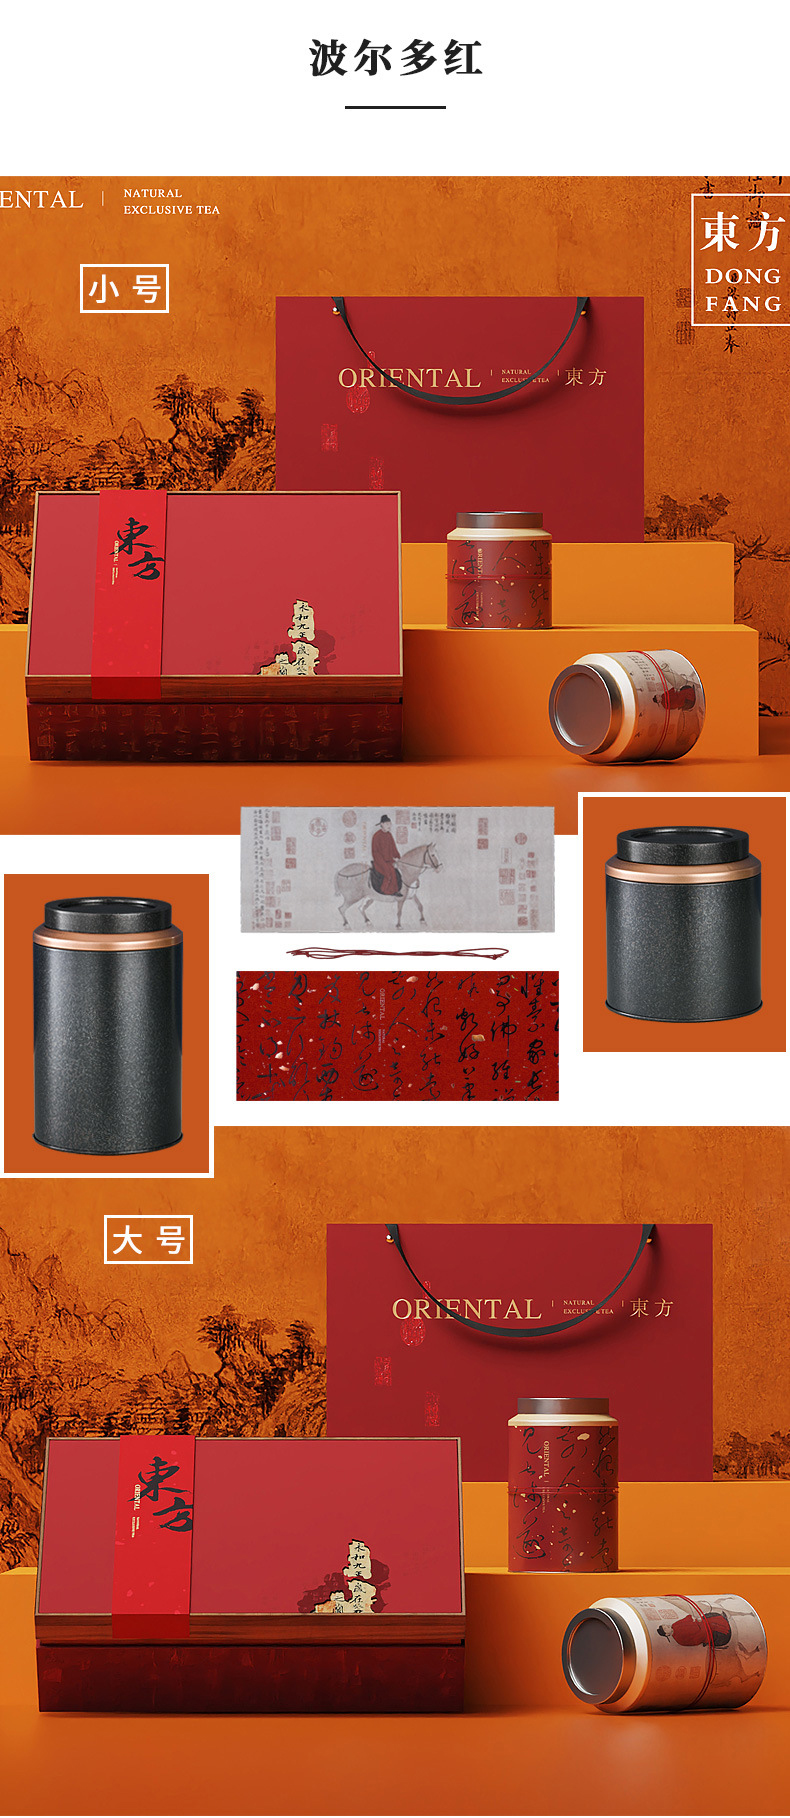 安阳茶叶包装礼盒生产厂家_安阳茶叶高端礼盒包装厂家_盒畔